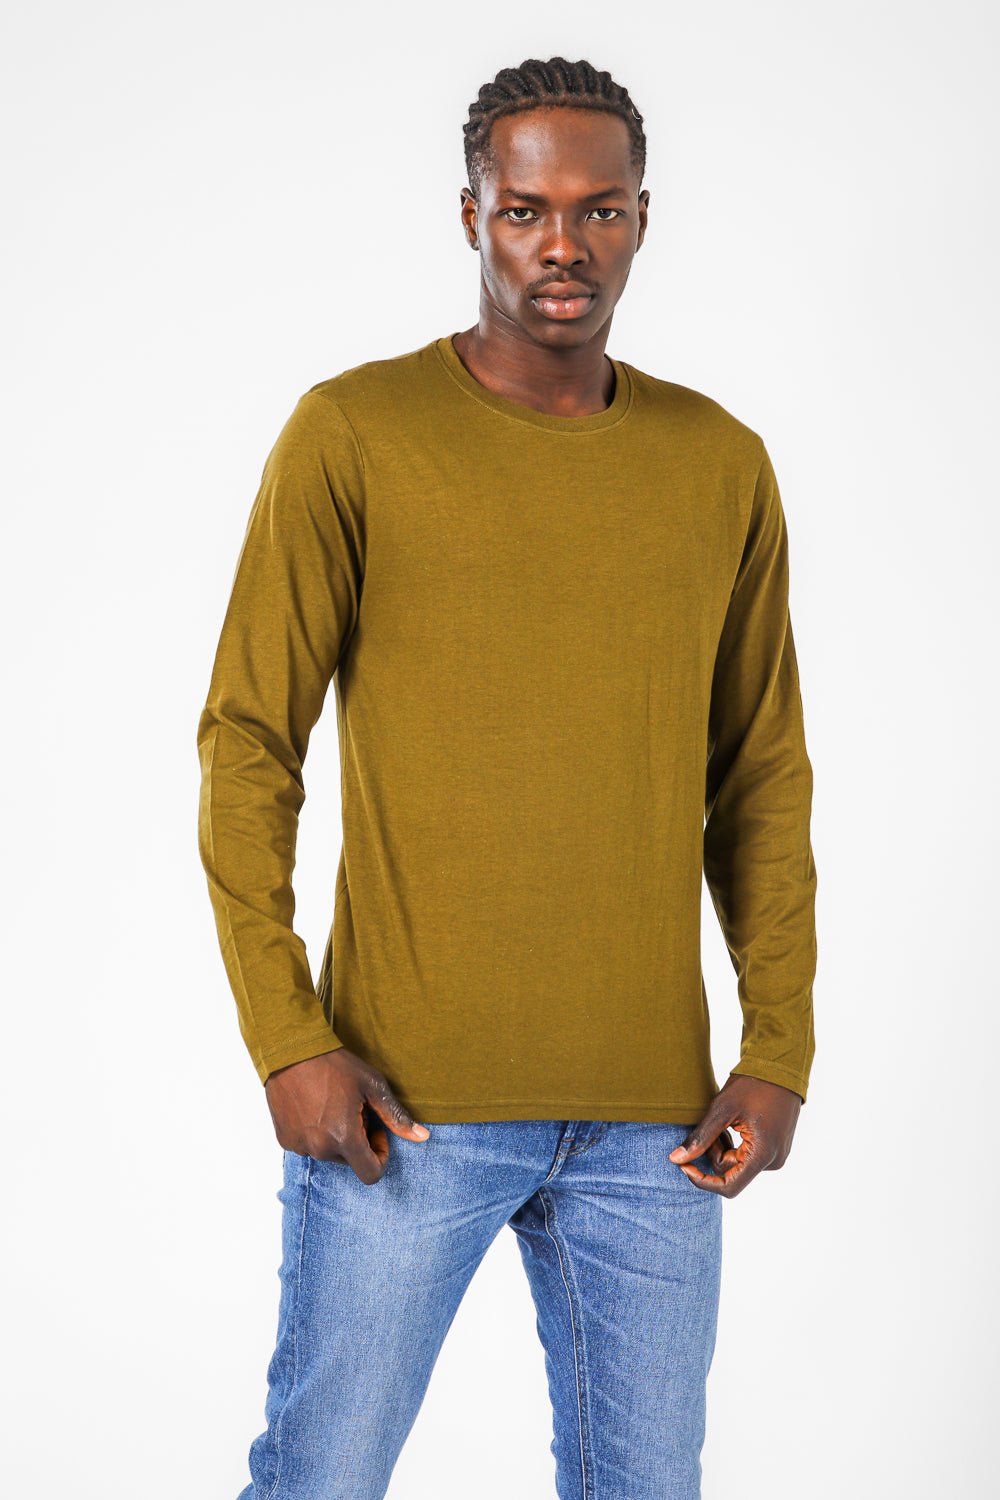 COOL 32 - חולצה תרמית לגבר בצבע ירוק - MASHBIR//365